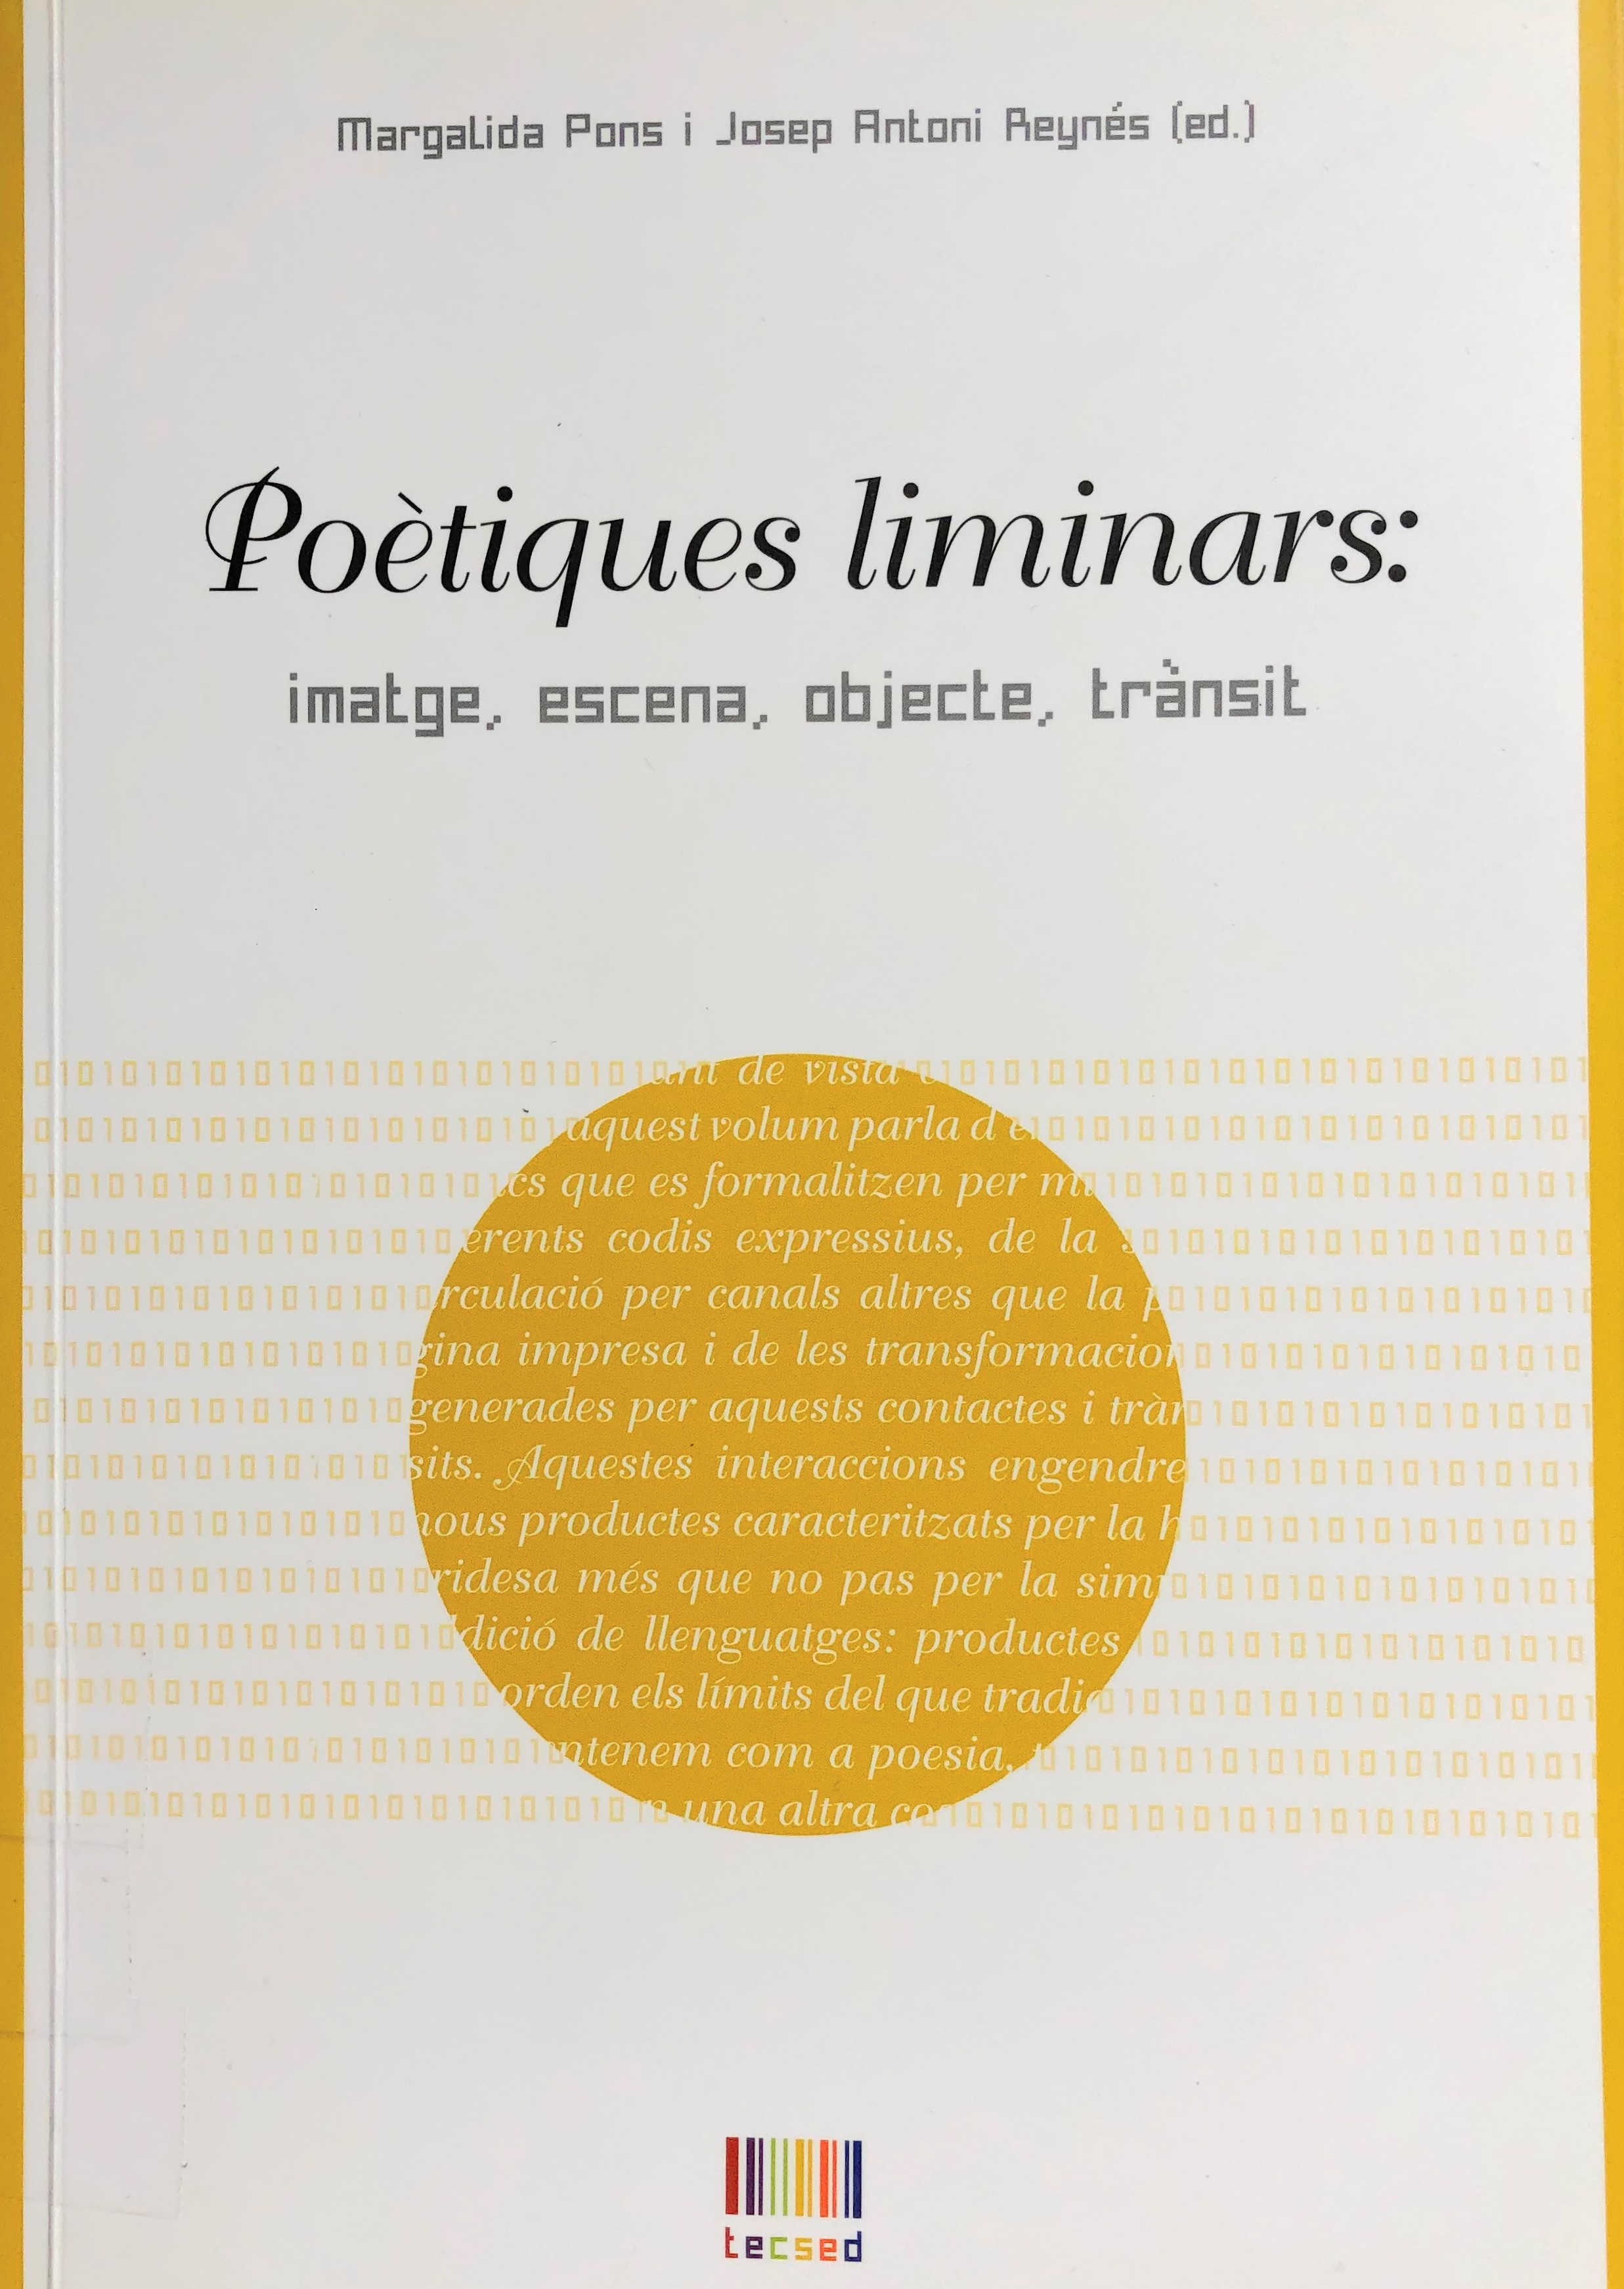 Imagen de portada del libro Poètiques liminars